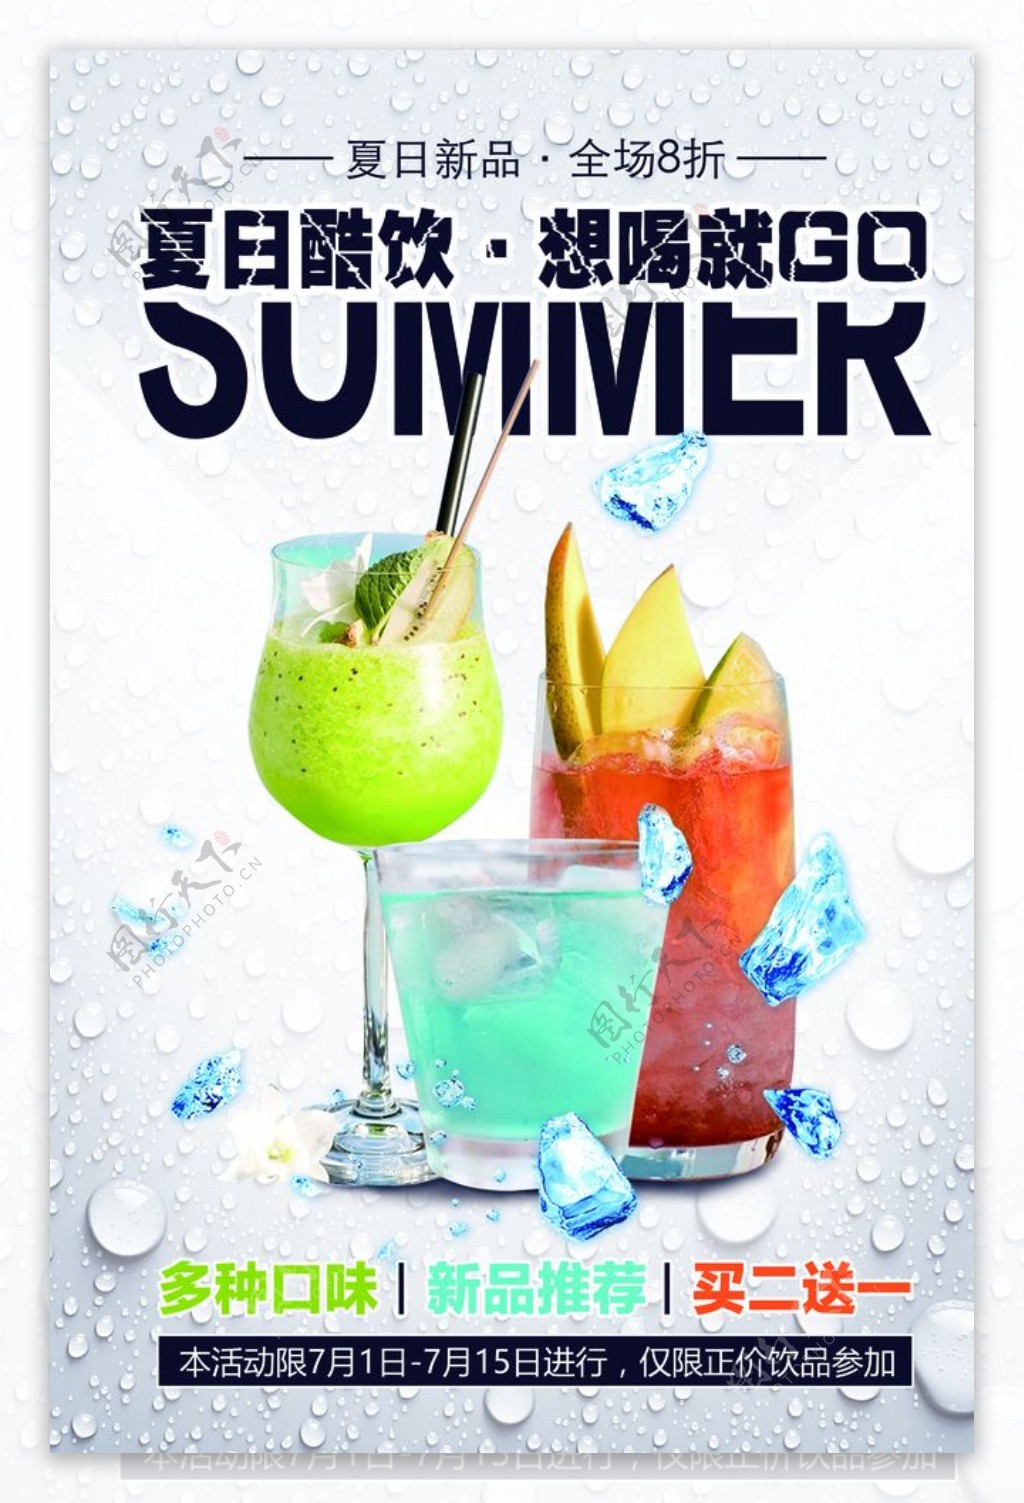 夏日饮品饮料活动宣传海报素材图片